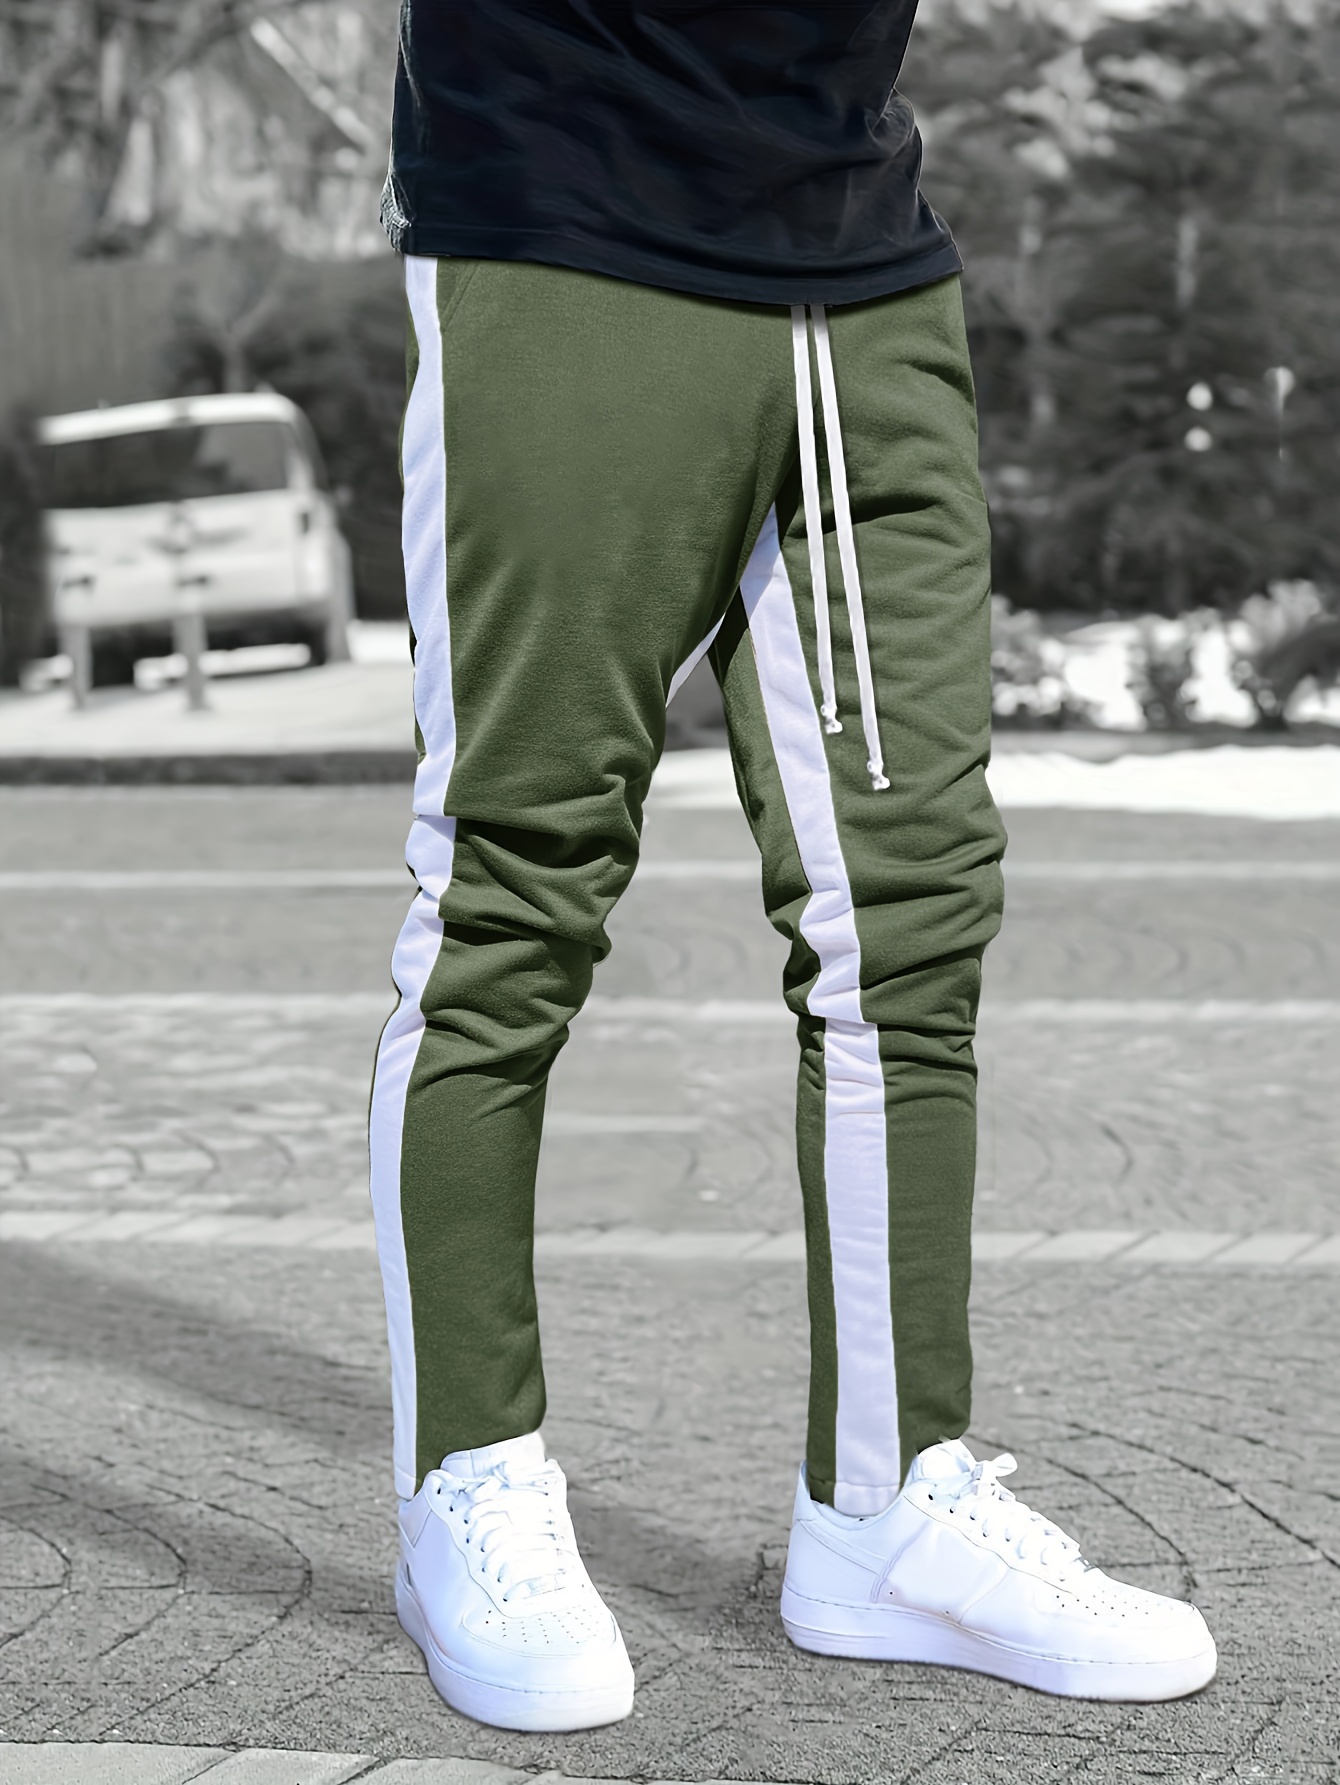 Casual Stripes Baggy Sweatpants Black Side Slit Design Jogger